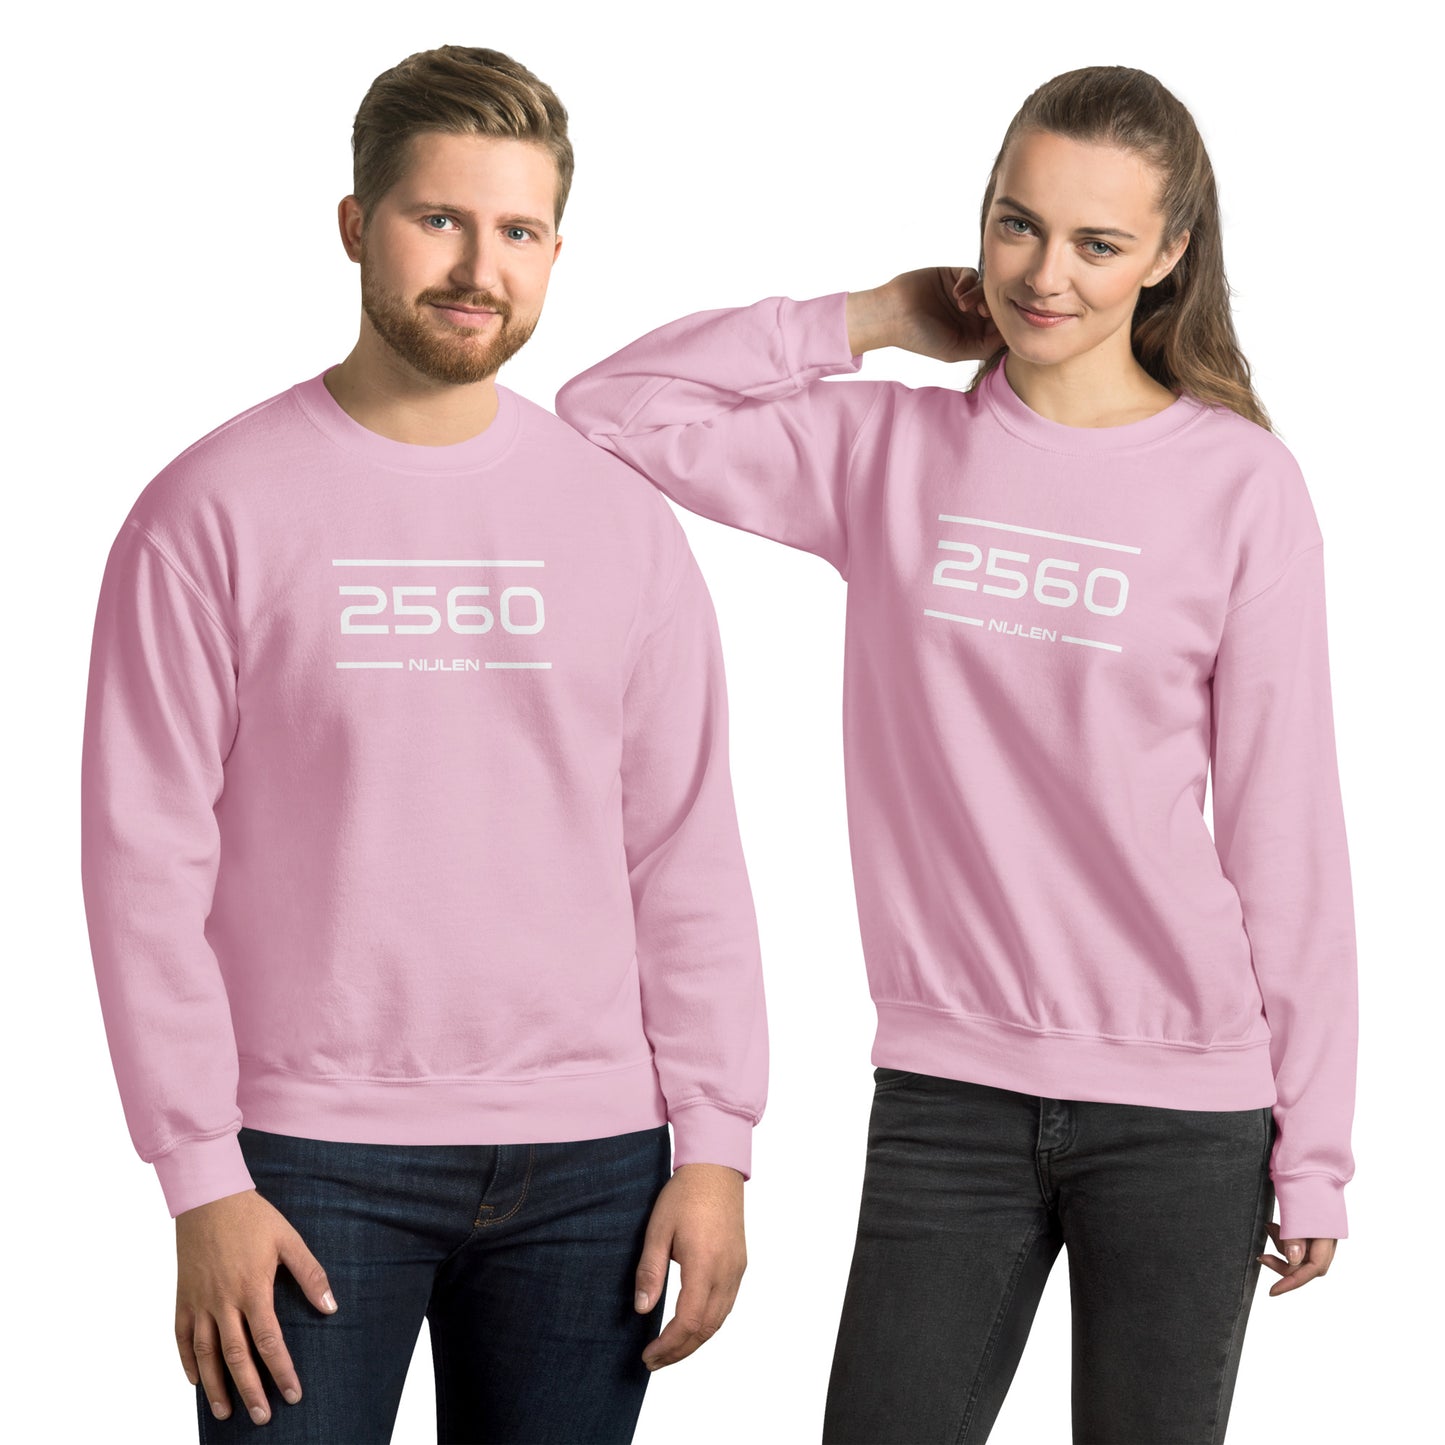 Sweater - 2560 - Nijlen (M/V)